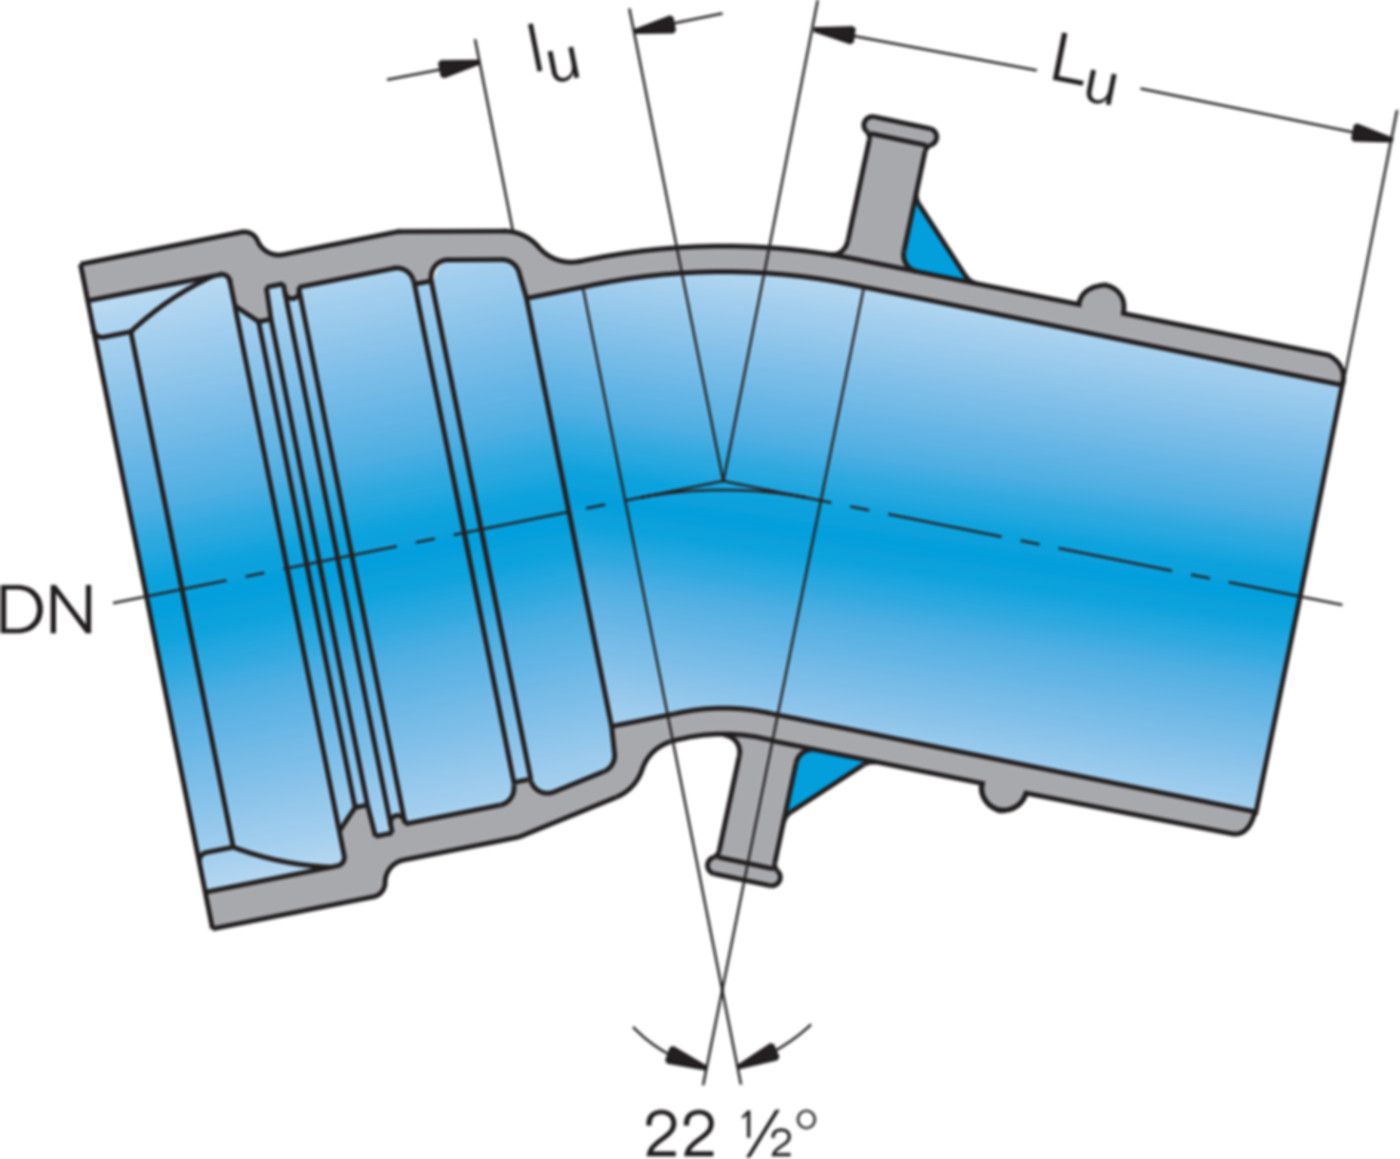 1-Muffe-Bogen MK 22° System BLS DN 250 - Frischhut Steckmuffenformstücke